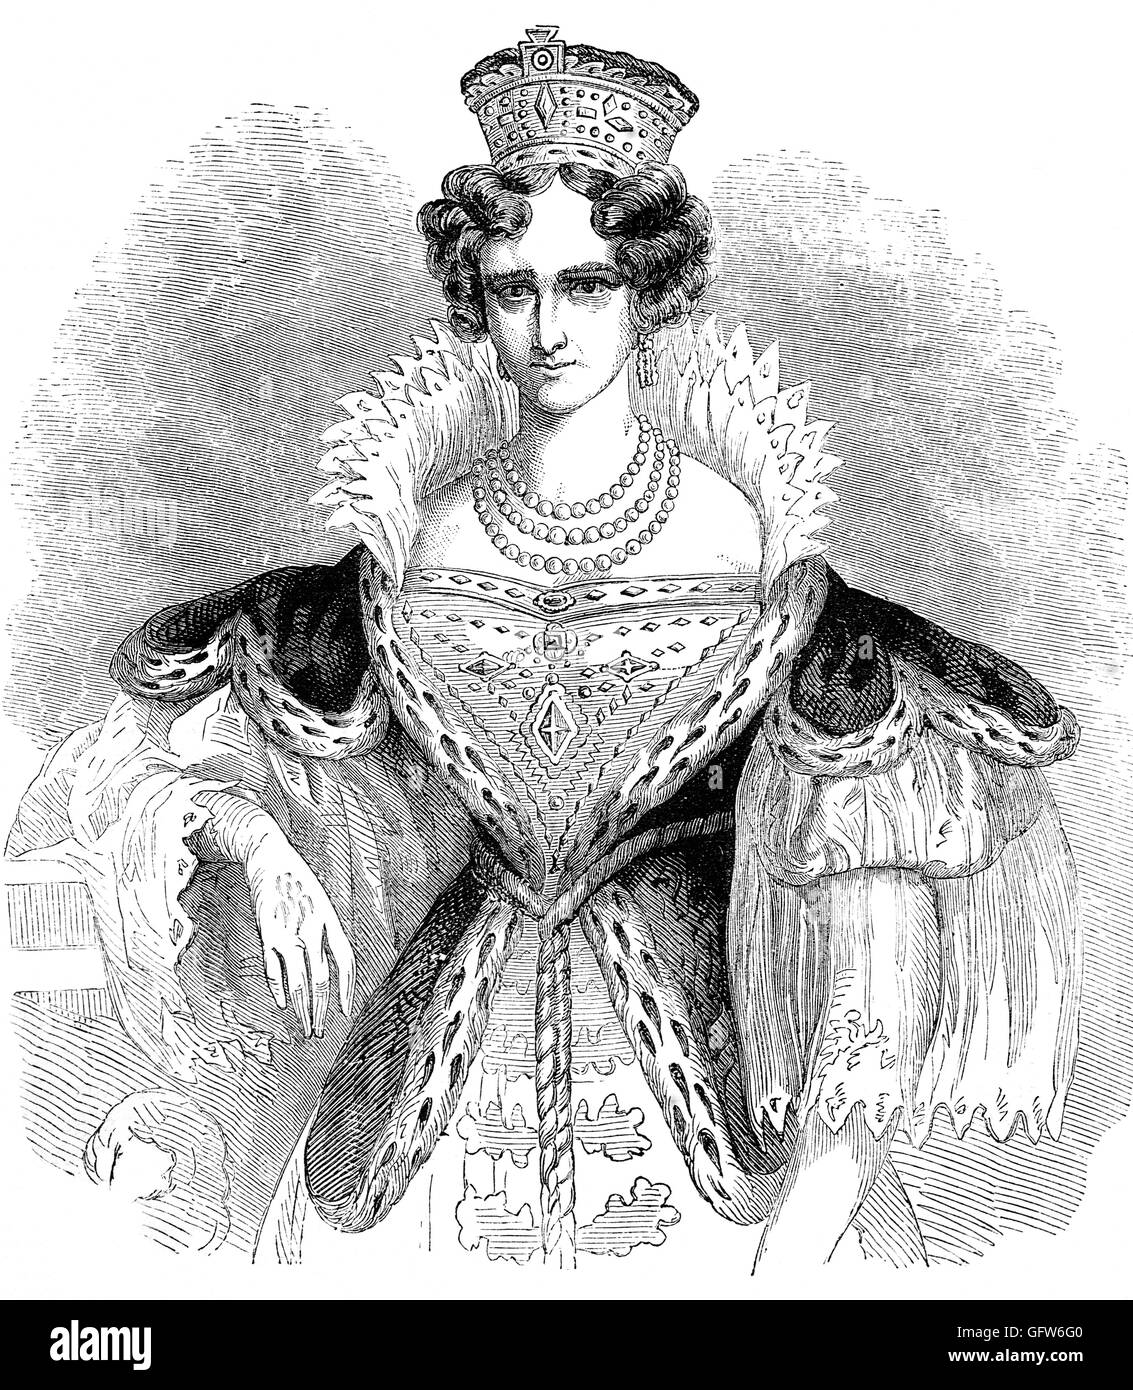 Adelaide von Saxe-Meiningen (1792 – 1849) war die Queen Consort des Vereinigten Königreichs und von Hannover als Ehefrau von William IV des Vereinigten Königreichs. Adelaide war die Tochter von George I, Herzog von Sachsen-Meiningen und Luise Eleonore, Tochter von Prinz Christian von Hohenlohe-Langenburg. Stockfoto